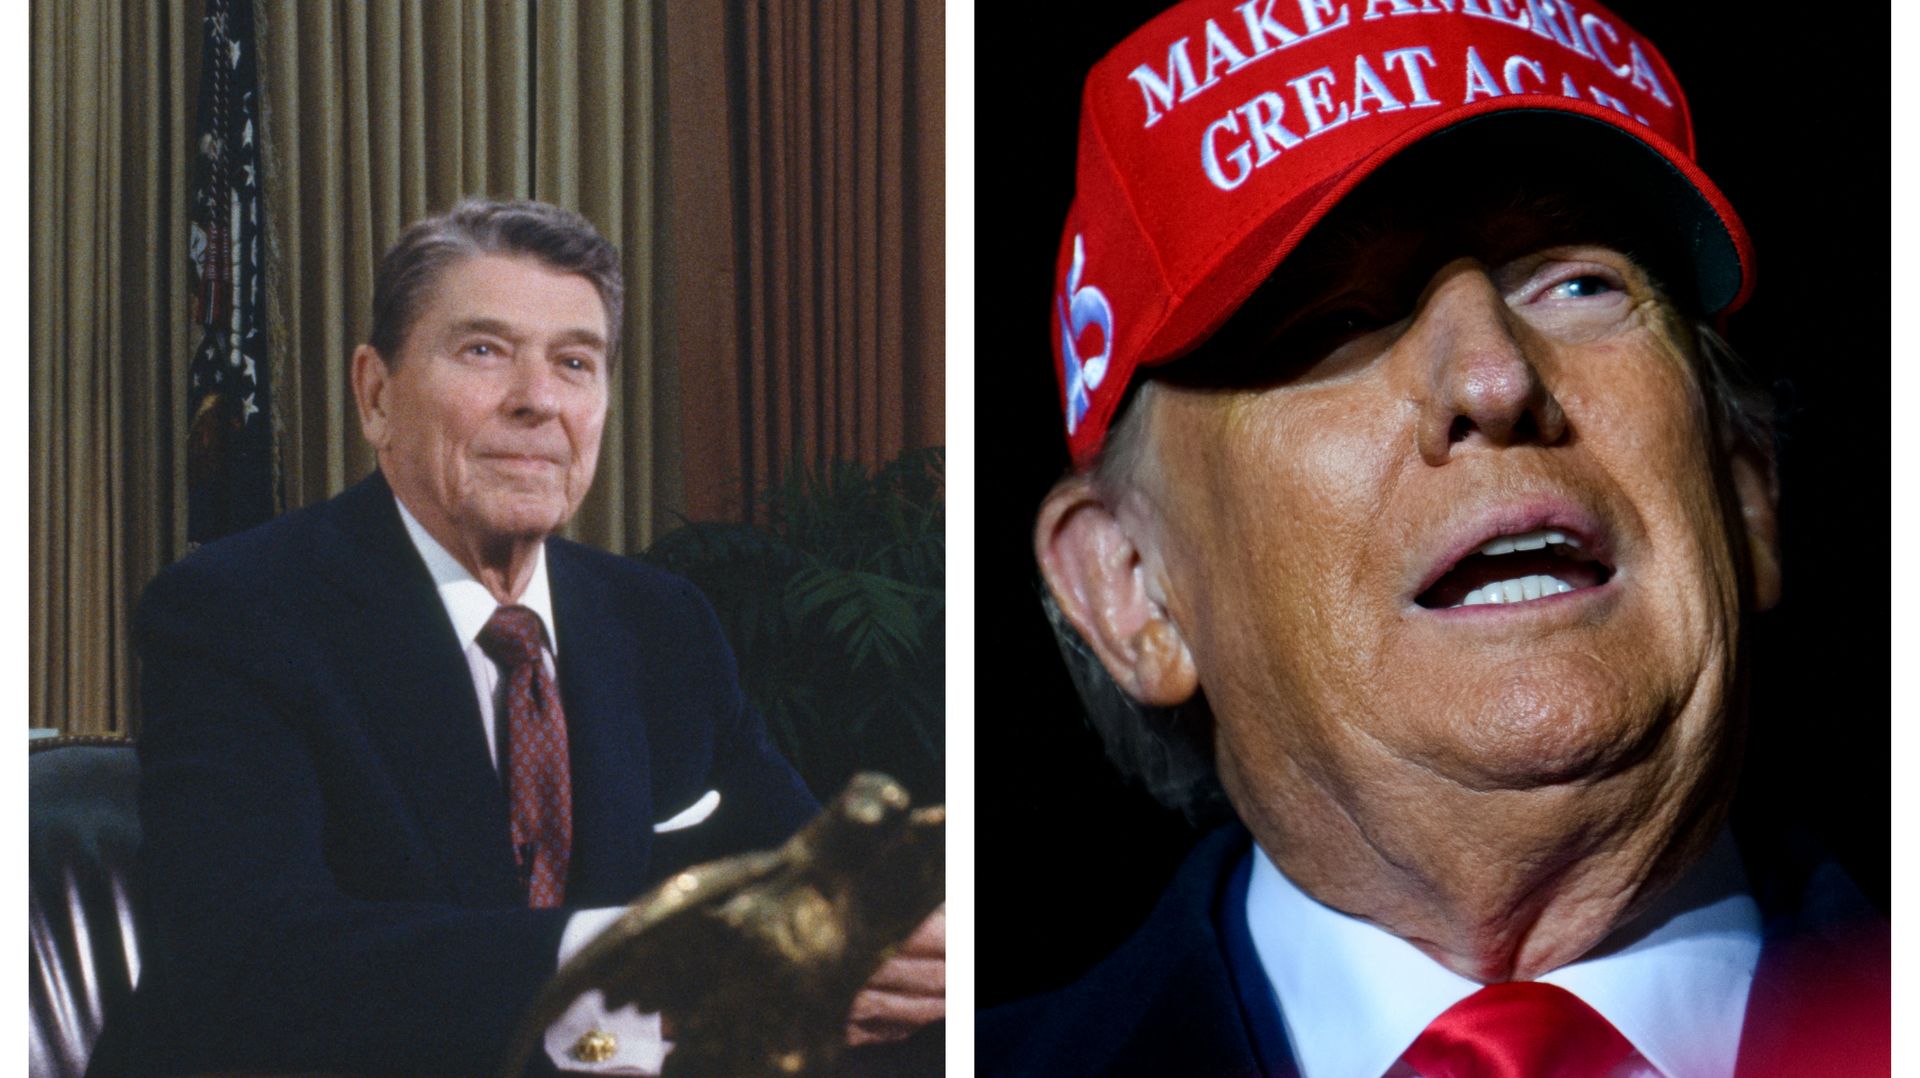 Ronald Reagan et Donald Trump, deux exemples emblématiques de l'accession au pouvoir de célébrités sans expérience politique préalable.